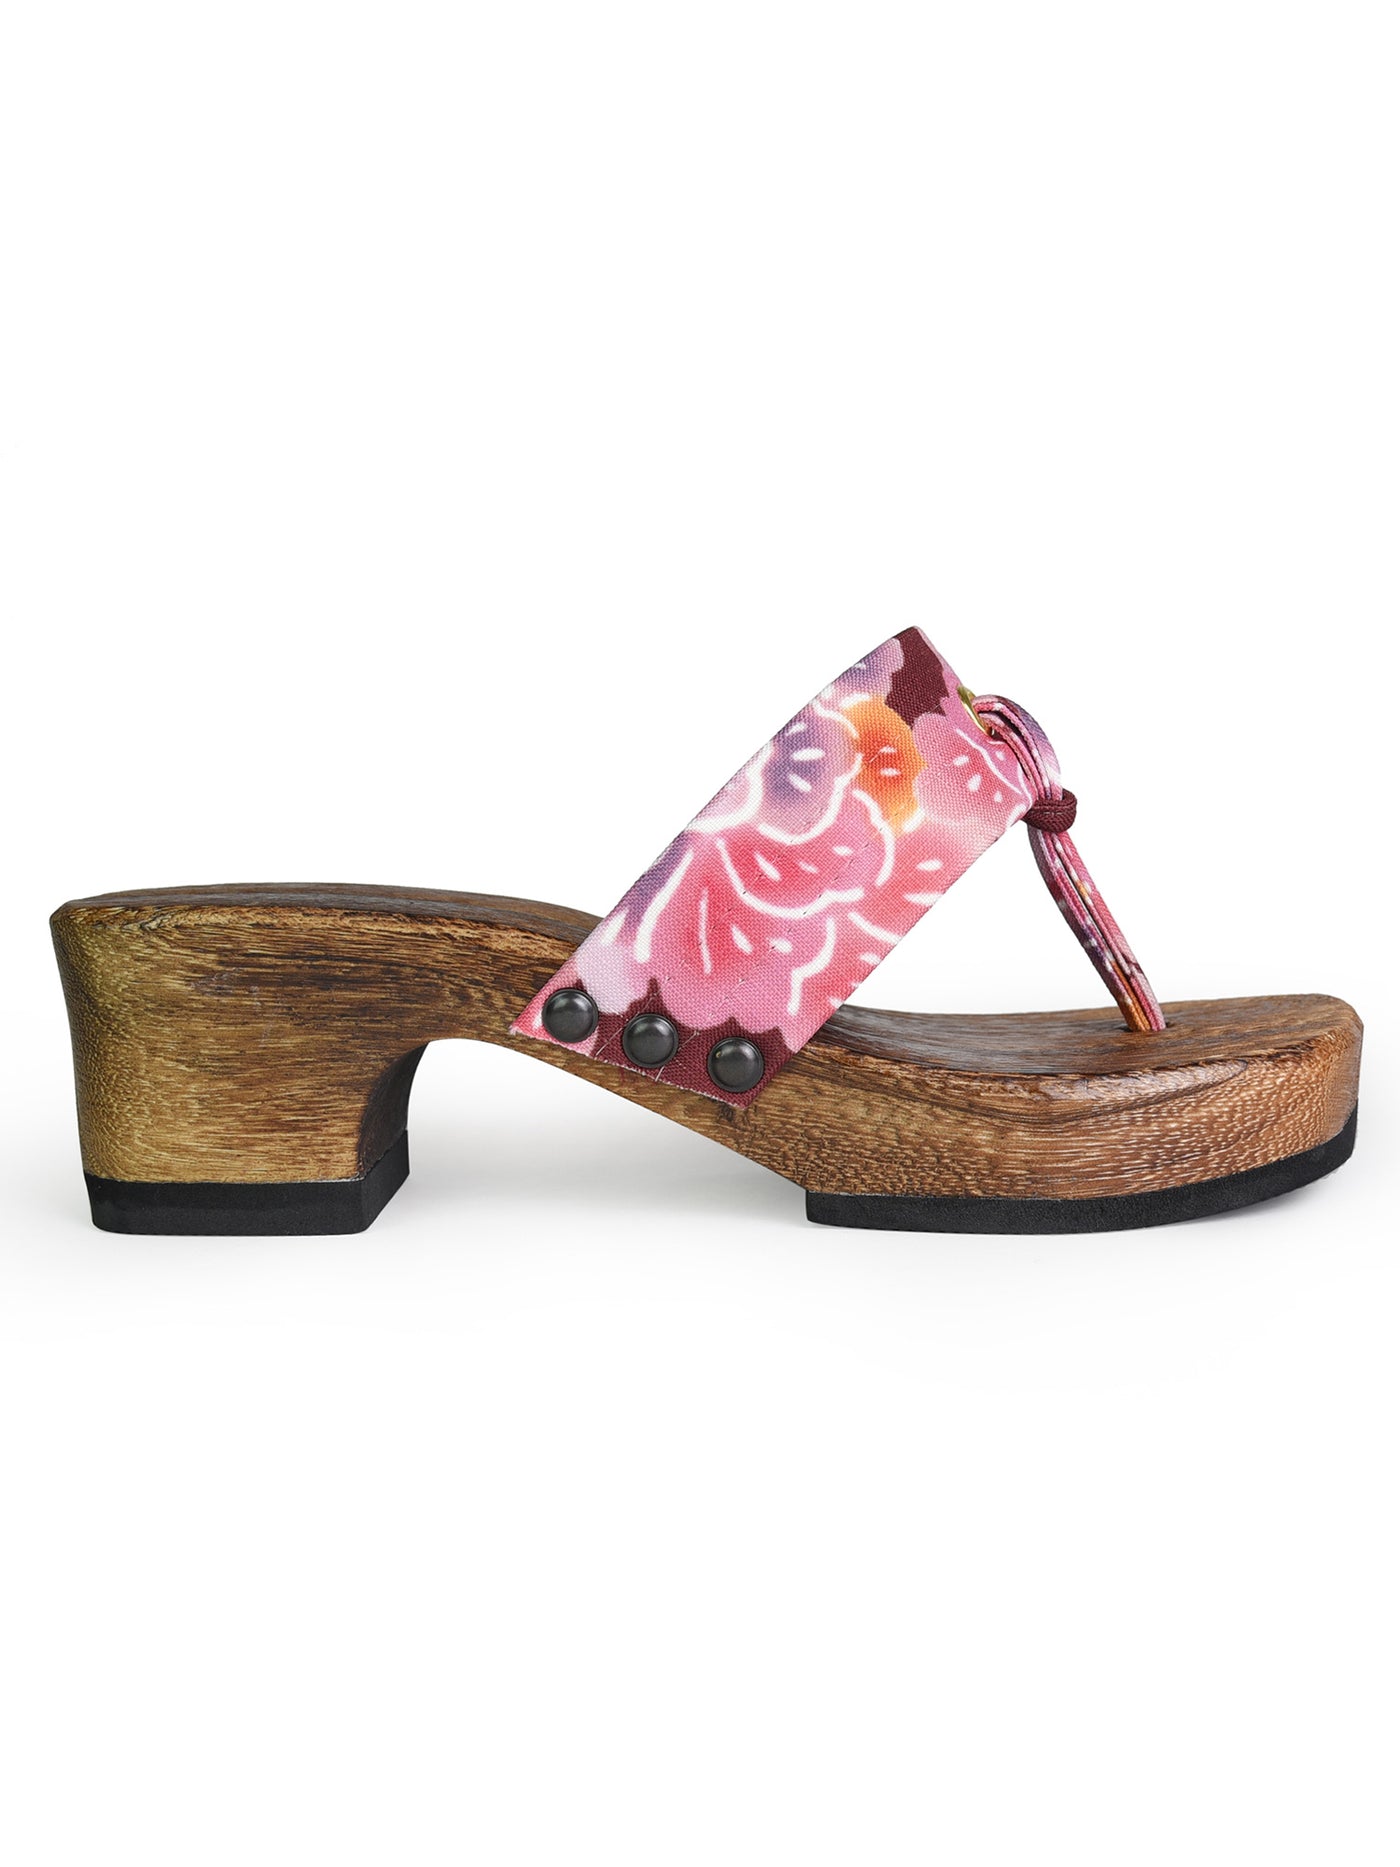 Bingata Wooden Geta Sandals in Rouge